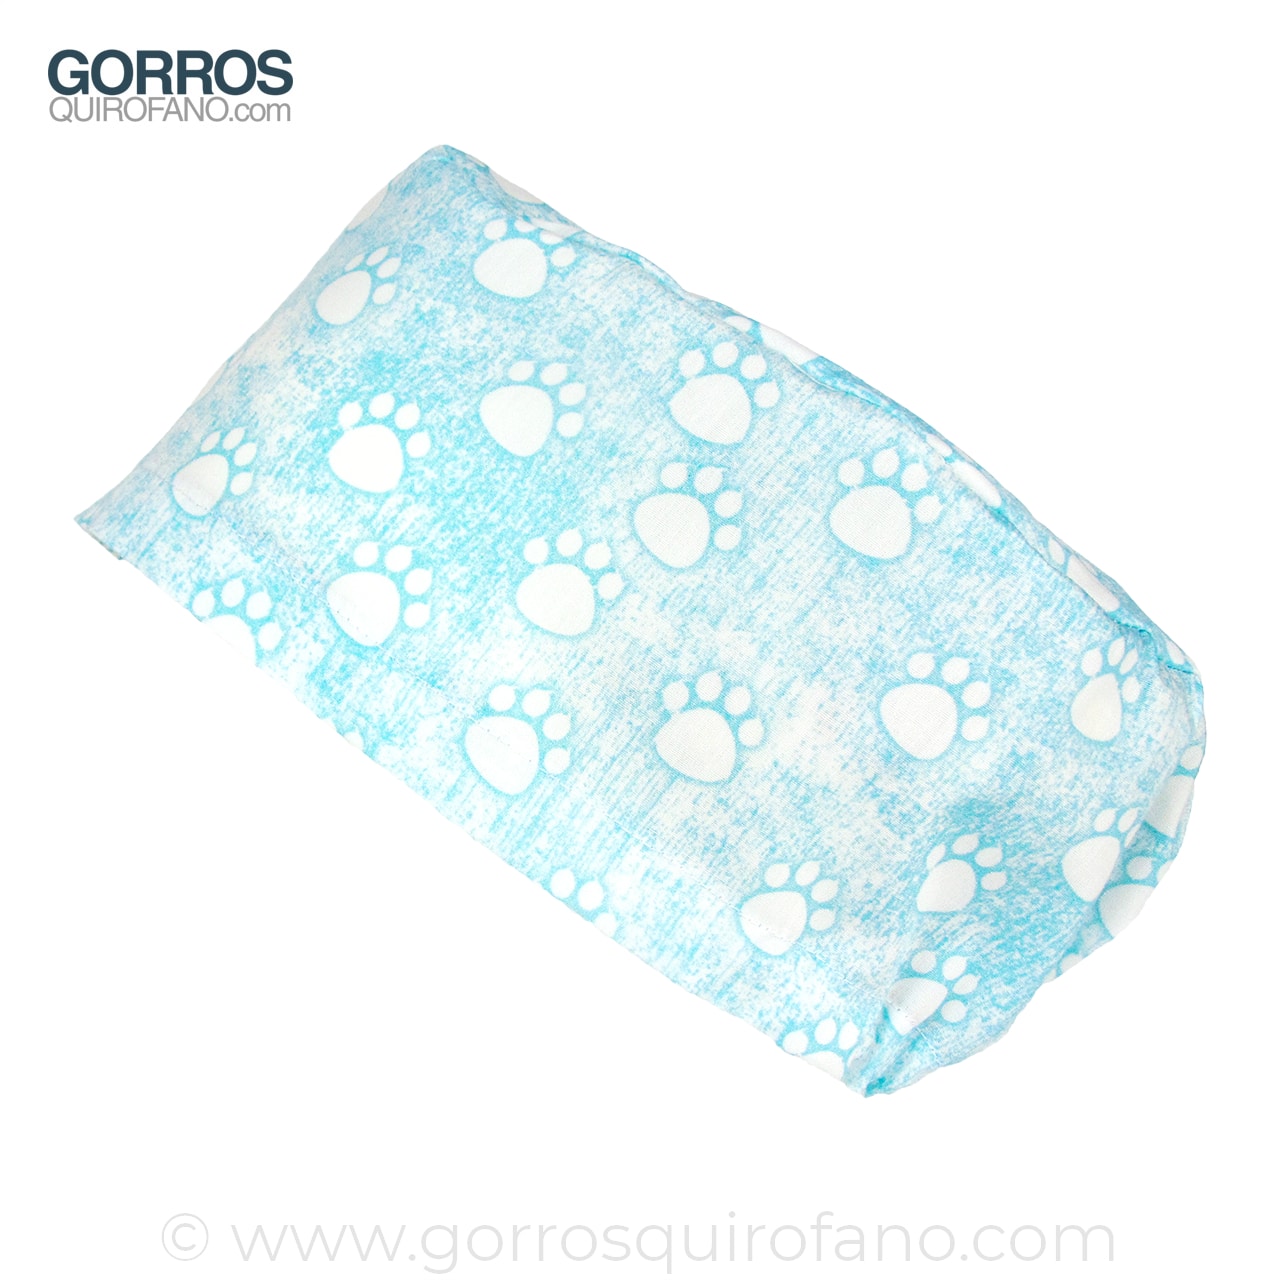 Gorros Quirofano Huellas Azules Jaspeadas - 380